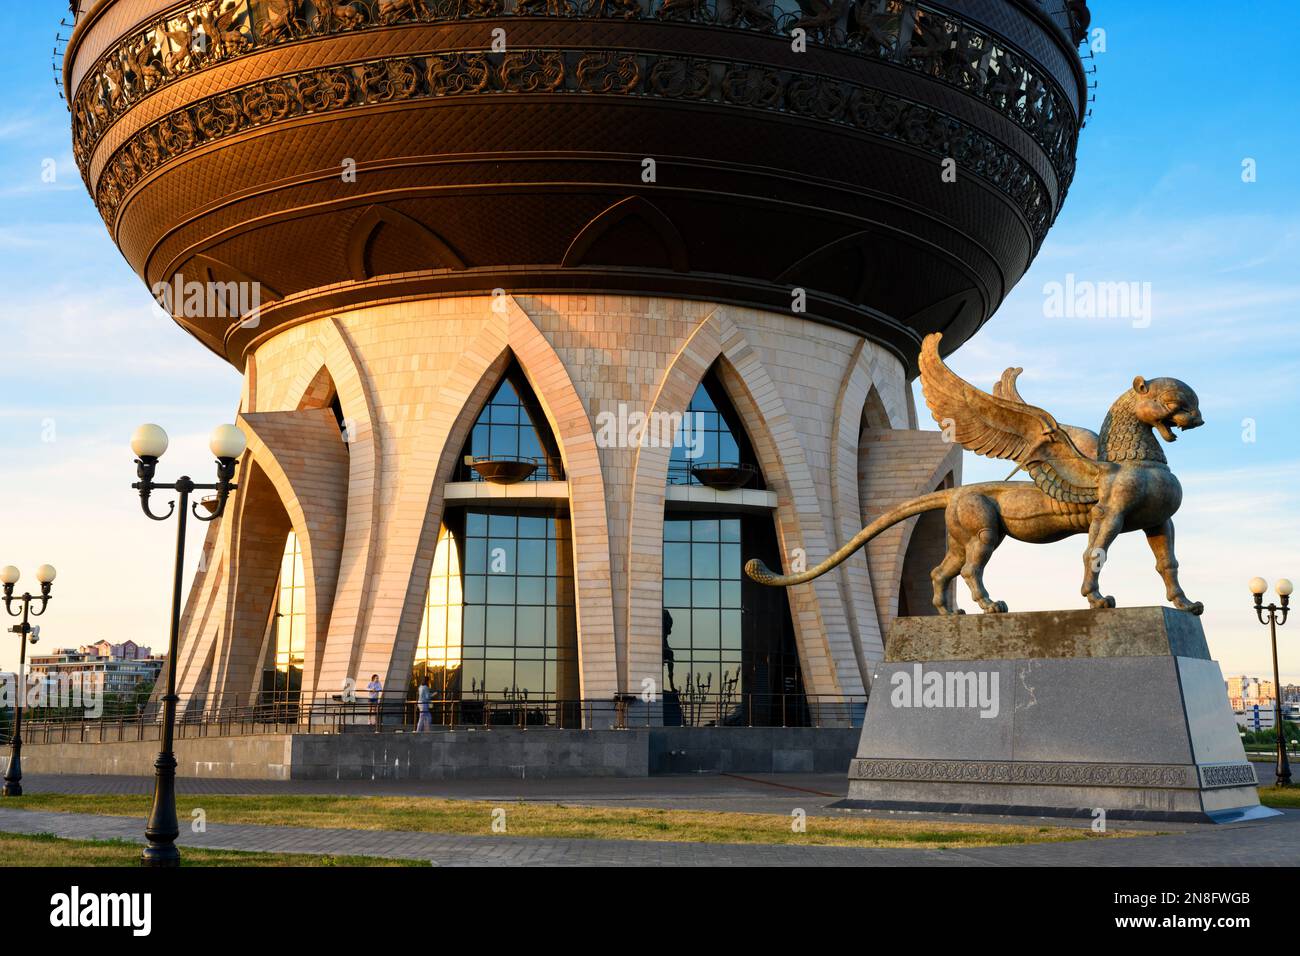 Kazan Wedding Palace (Centre familial) en été, Kazan, Tatarstan, Russie. C'est un monument historique de Kazan. Bâtiment inhabituel, attractions touristiques Banque D'Images